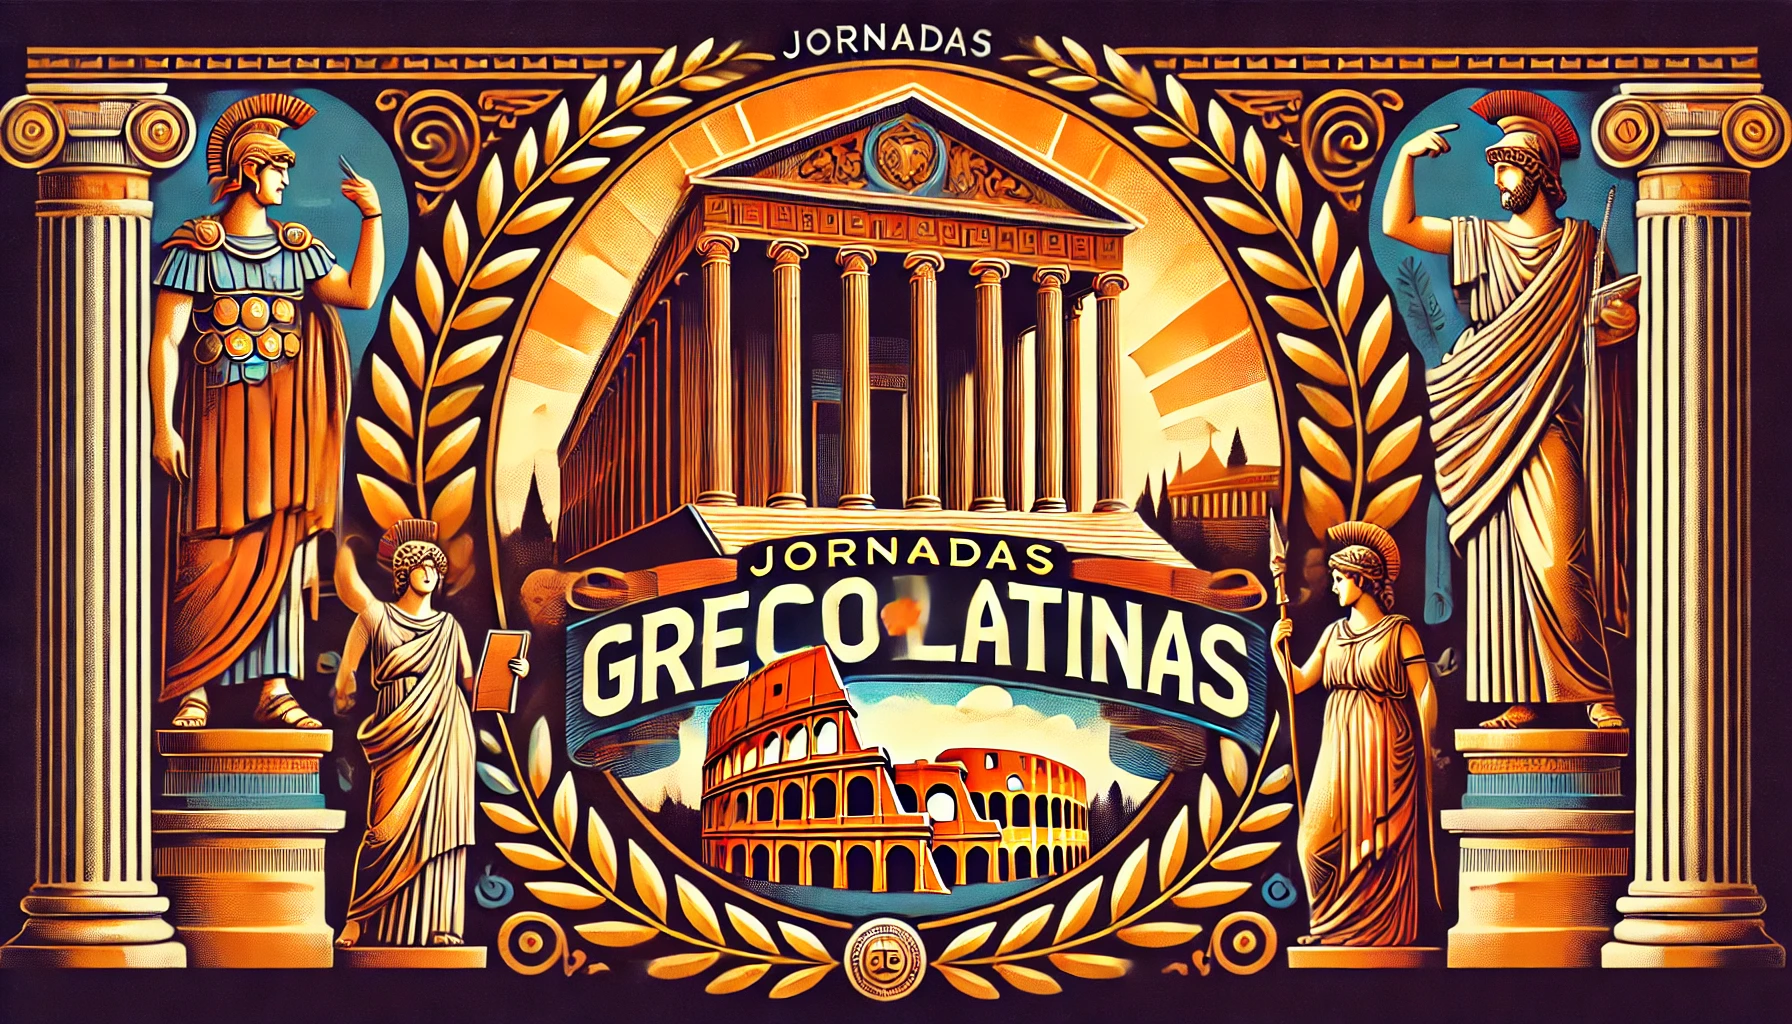 Featured image for “I Jornadas Grecolatinas”